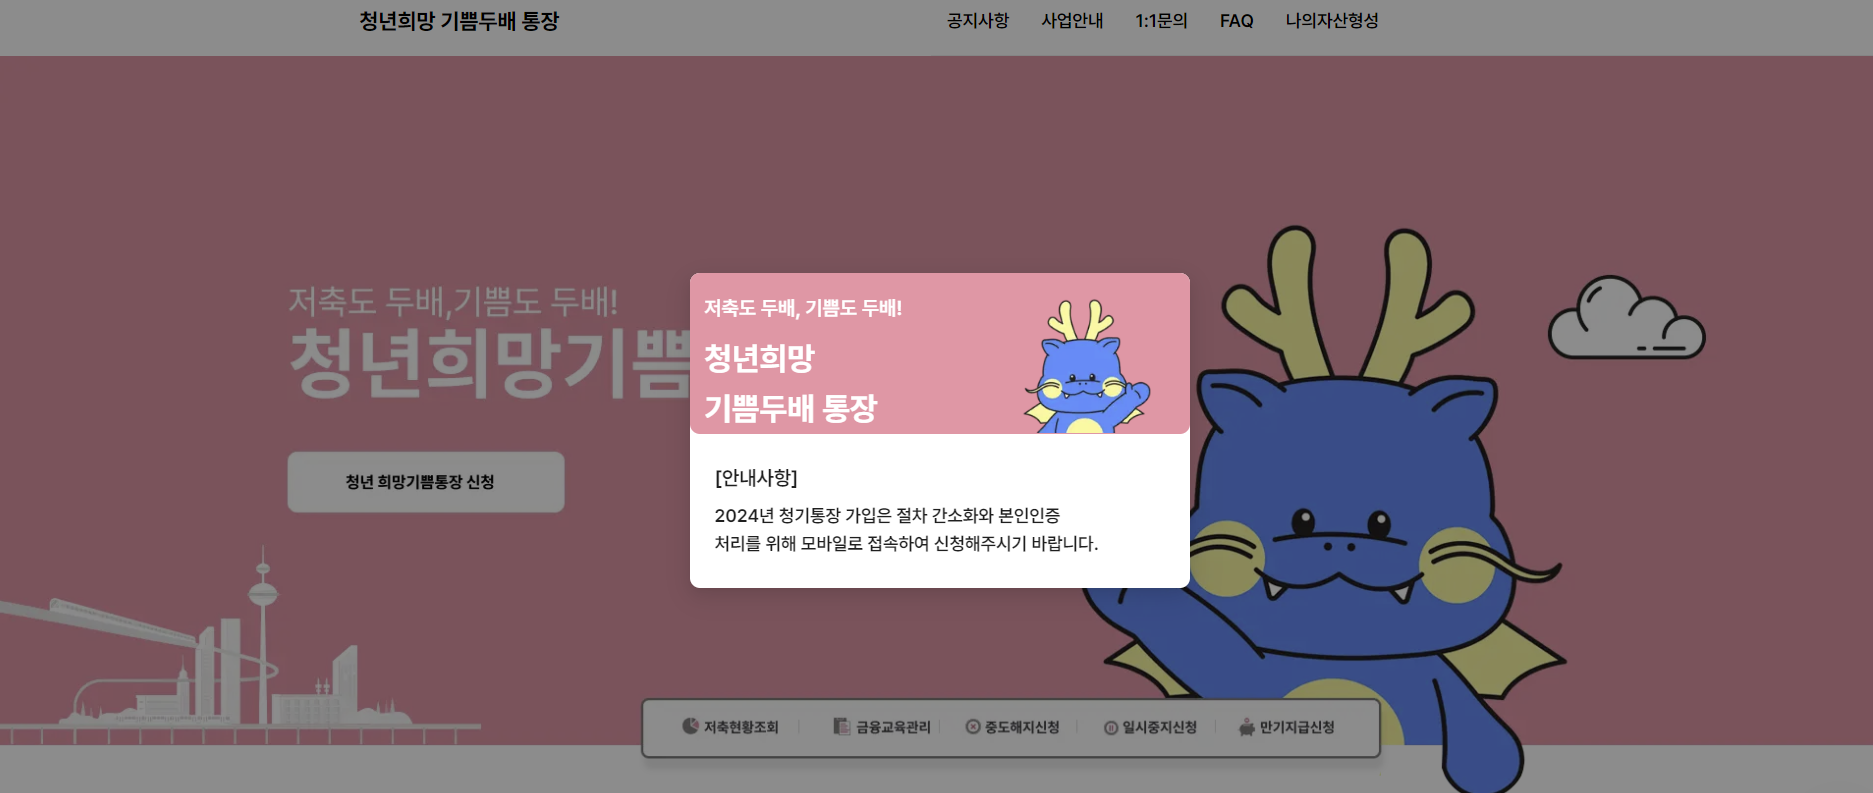 부산청년 기쁨두배 통장 공식 홈페이지를 모방한 웹사이트